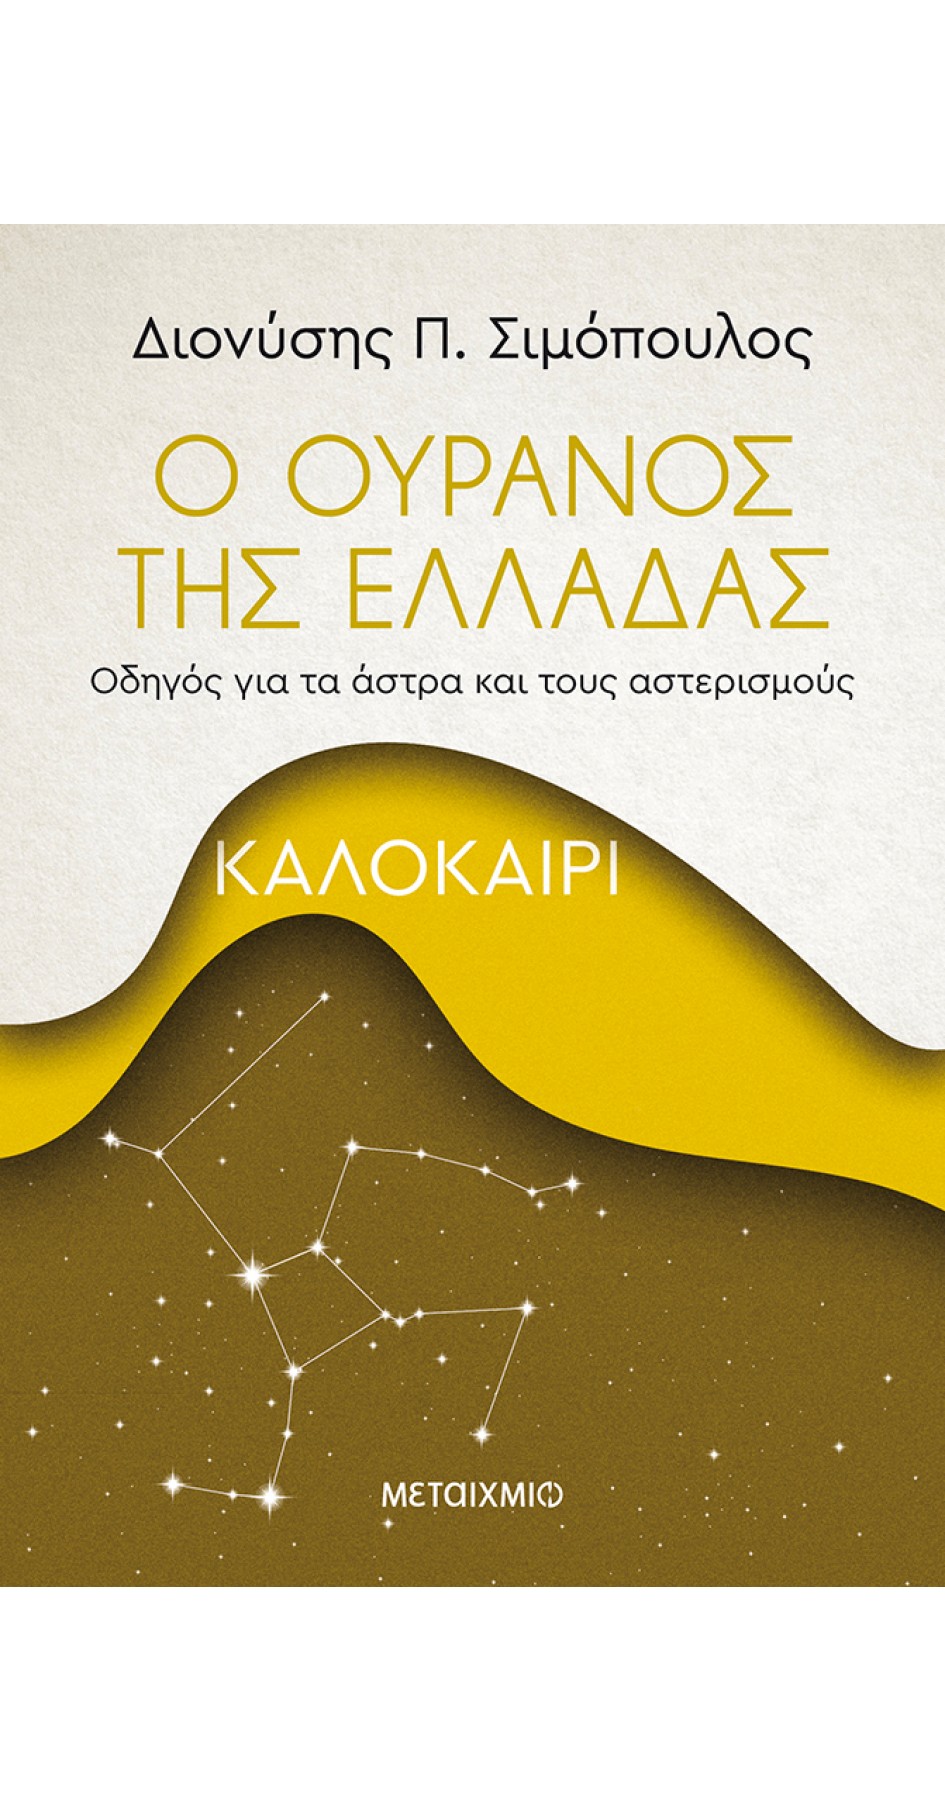 Ο ουρανός της Ελλάδας: Καλοκαίρι (BOOK IN GREEK)